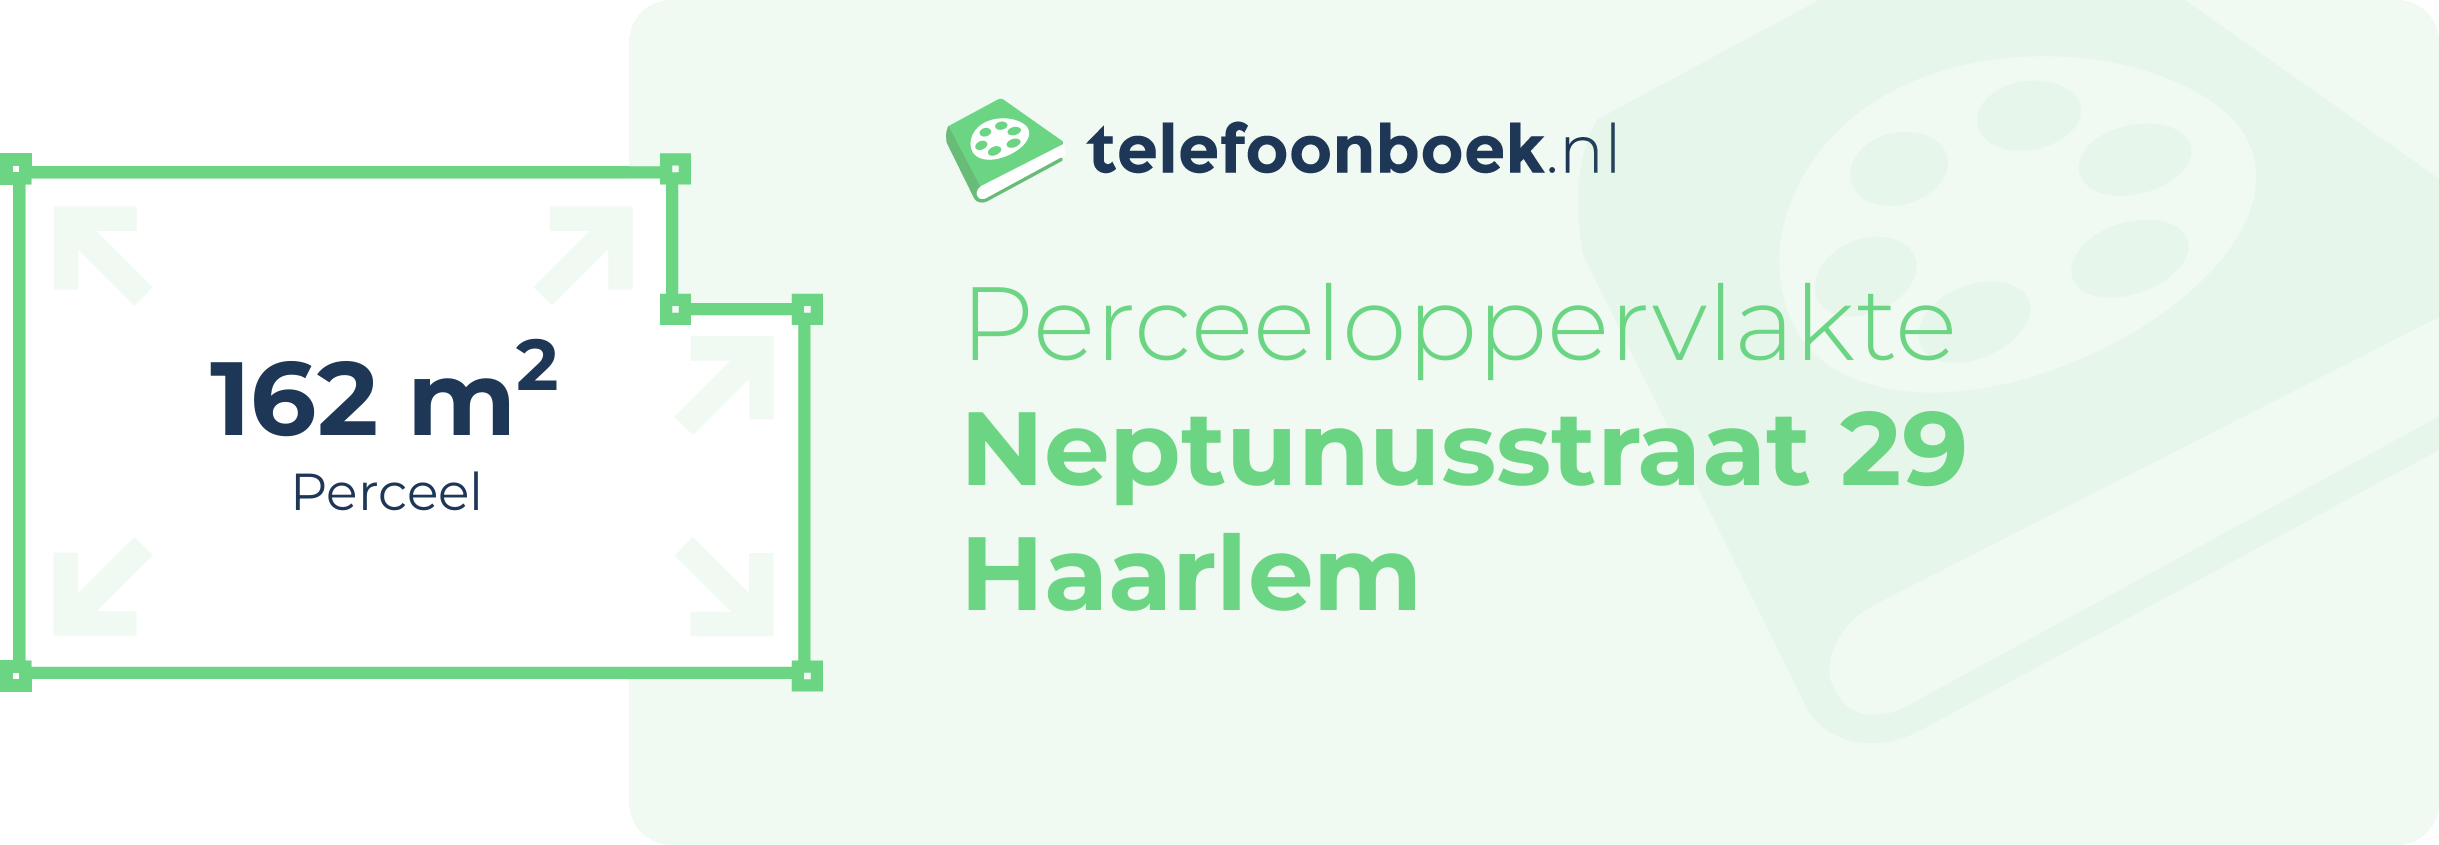 Perceeloppervlakte Neptunusstraat 29 Haarlem